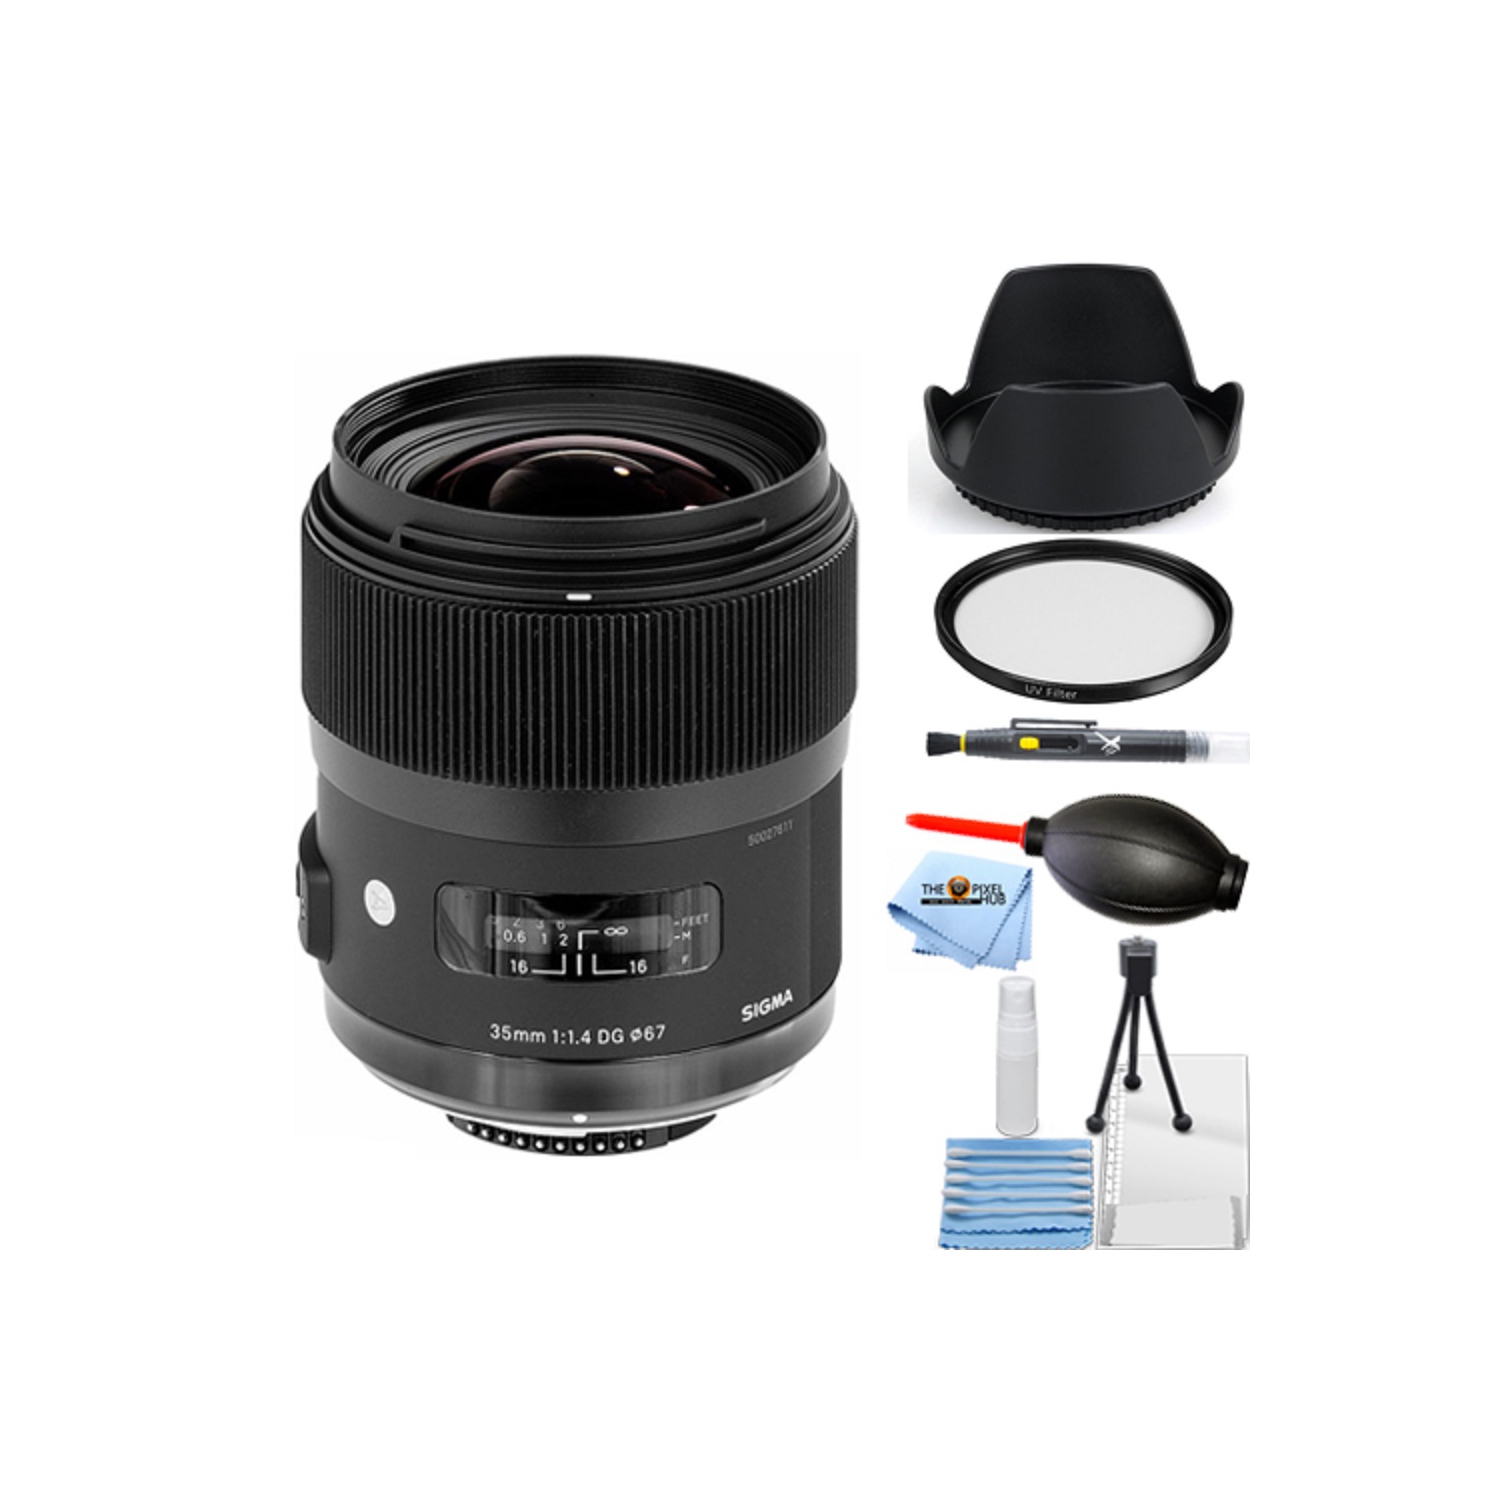 Sigma 35mm f/1.4 DG HSM Art Lens for Sony A DSLR Cameras 340205 Starter Bundle